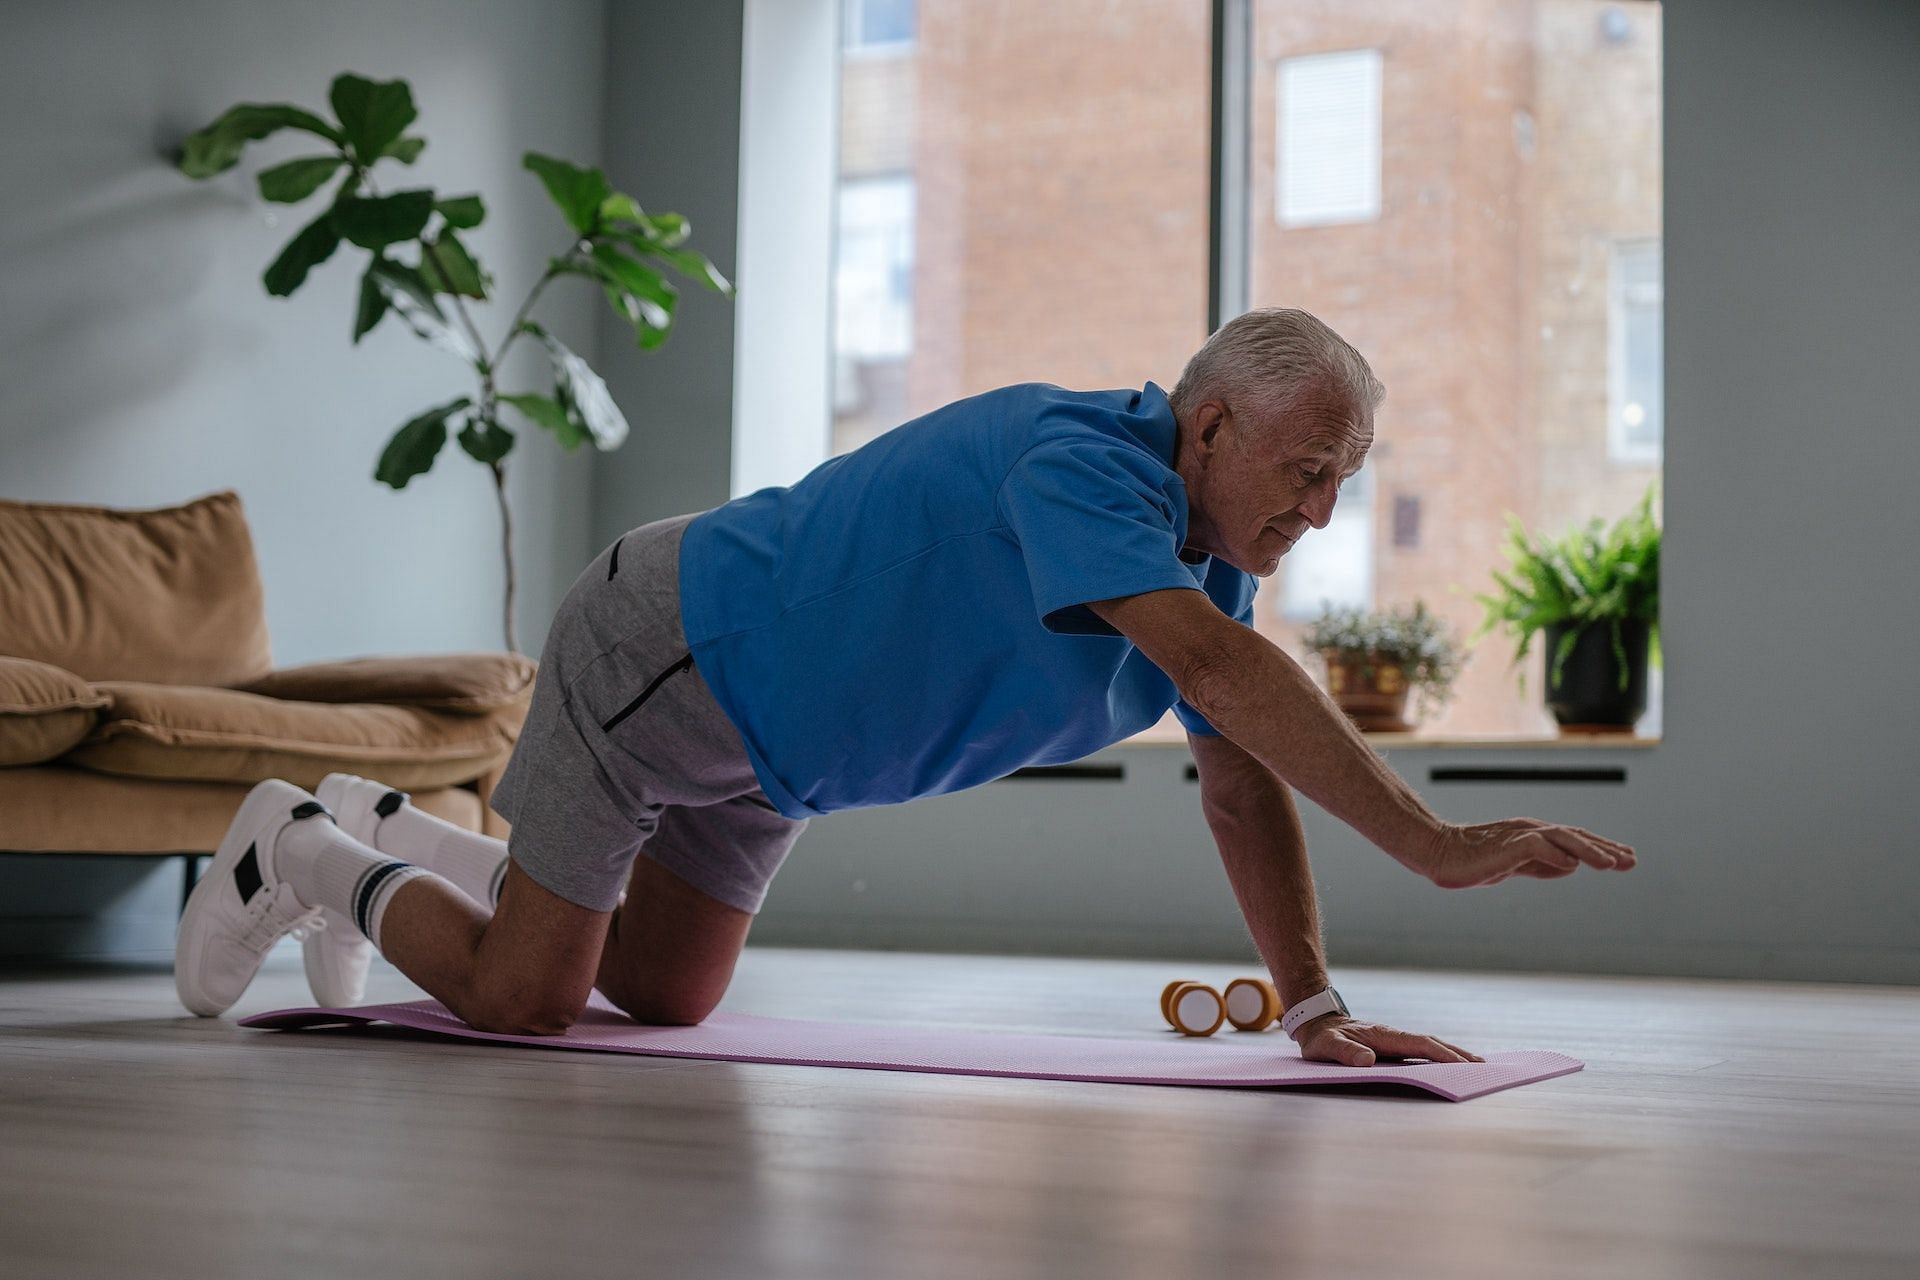 exercise for seniors over 75: Exercise for seniors over 75: 7